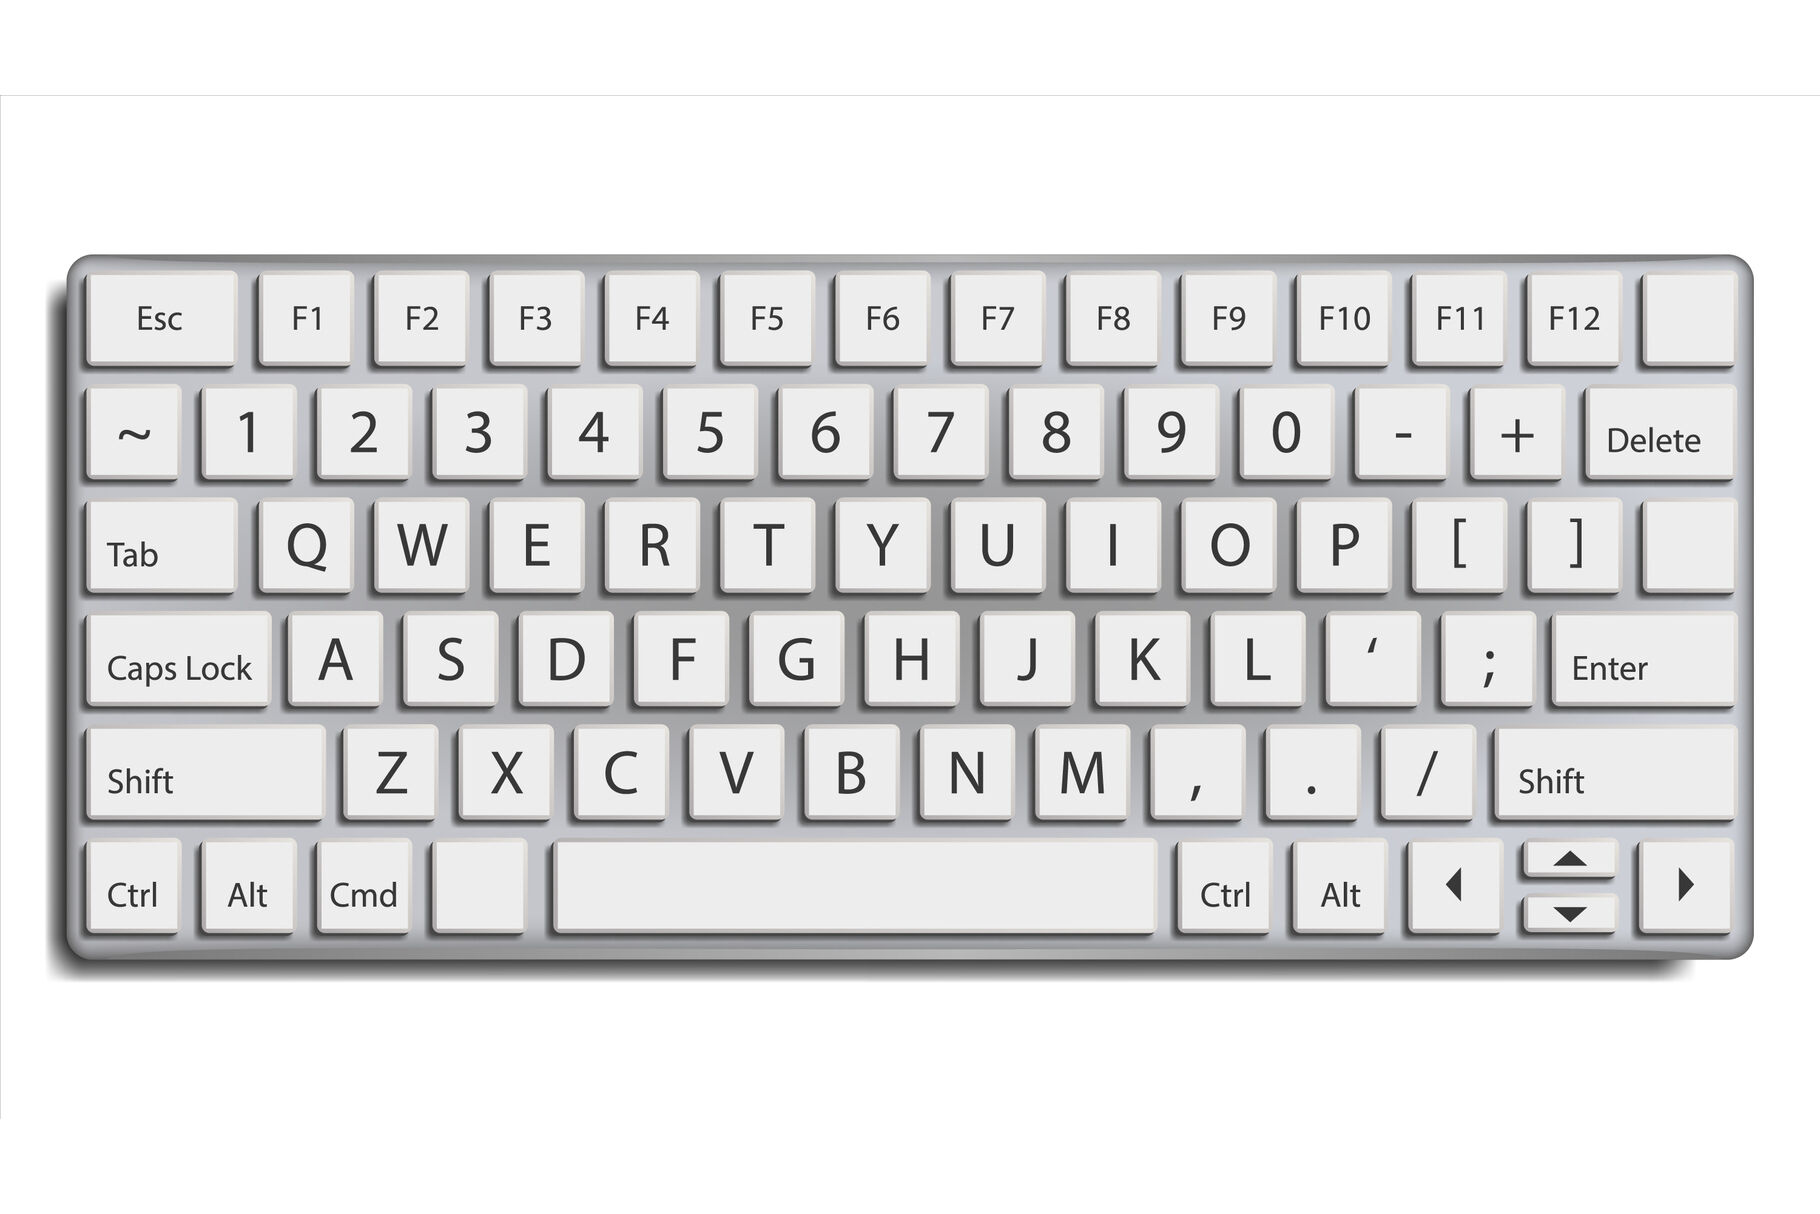 computer keyboard vector